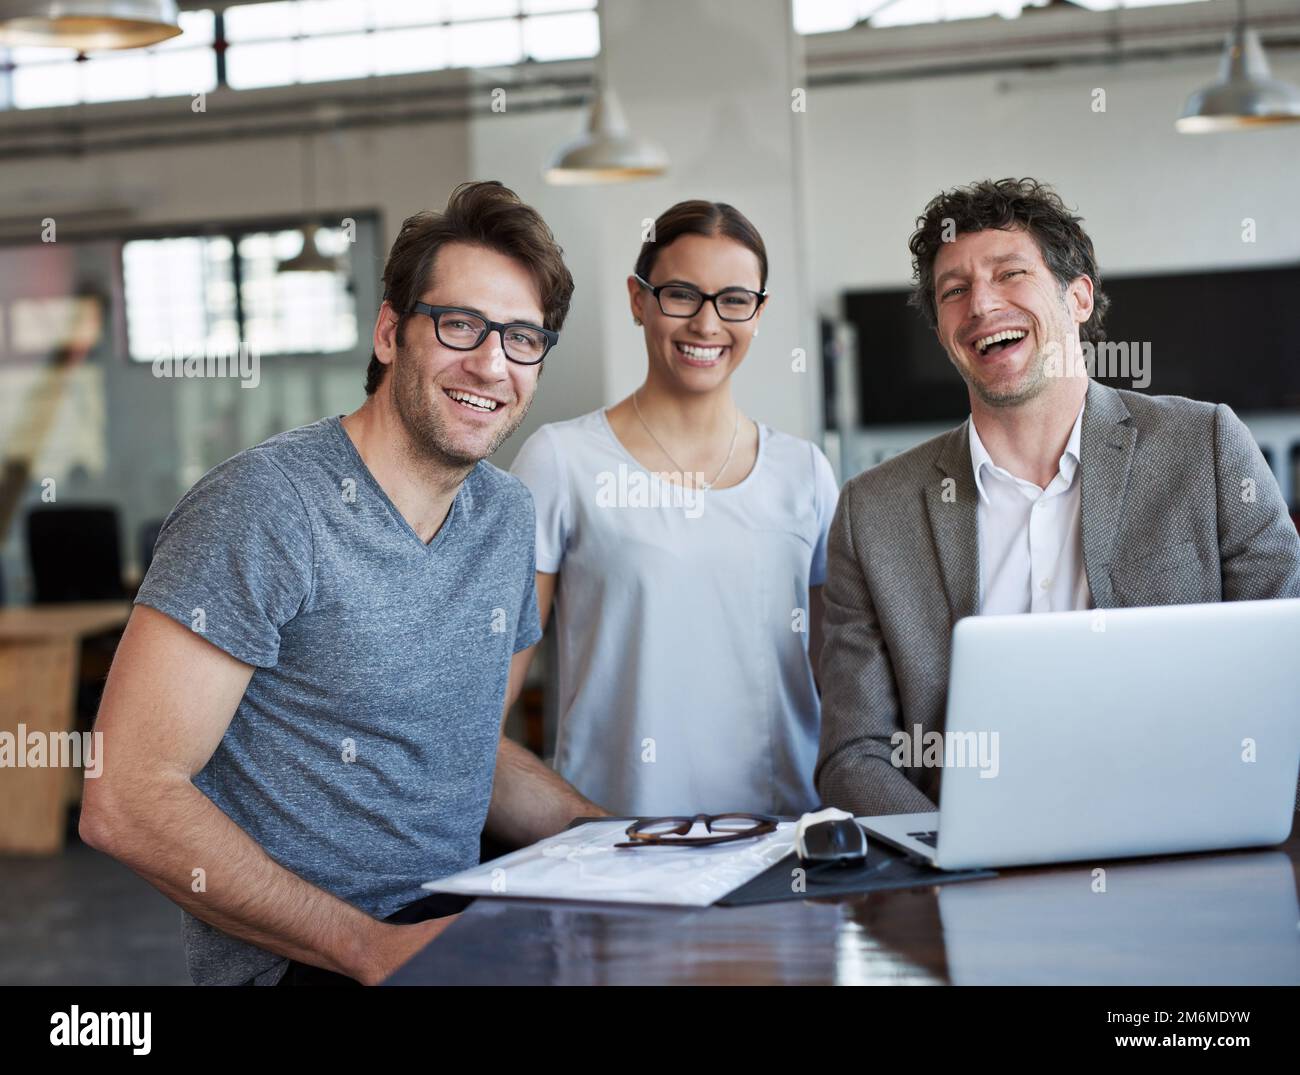 Le travail est facile lorsque vous aimez votre travail. Portrait de trois collègues au bureau. Banque D'Images